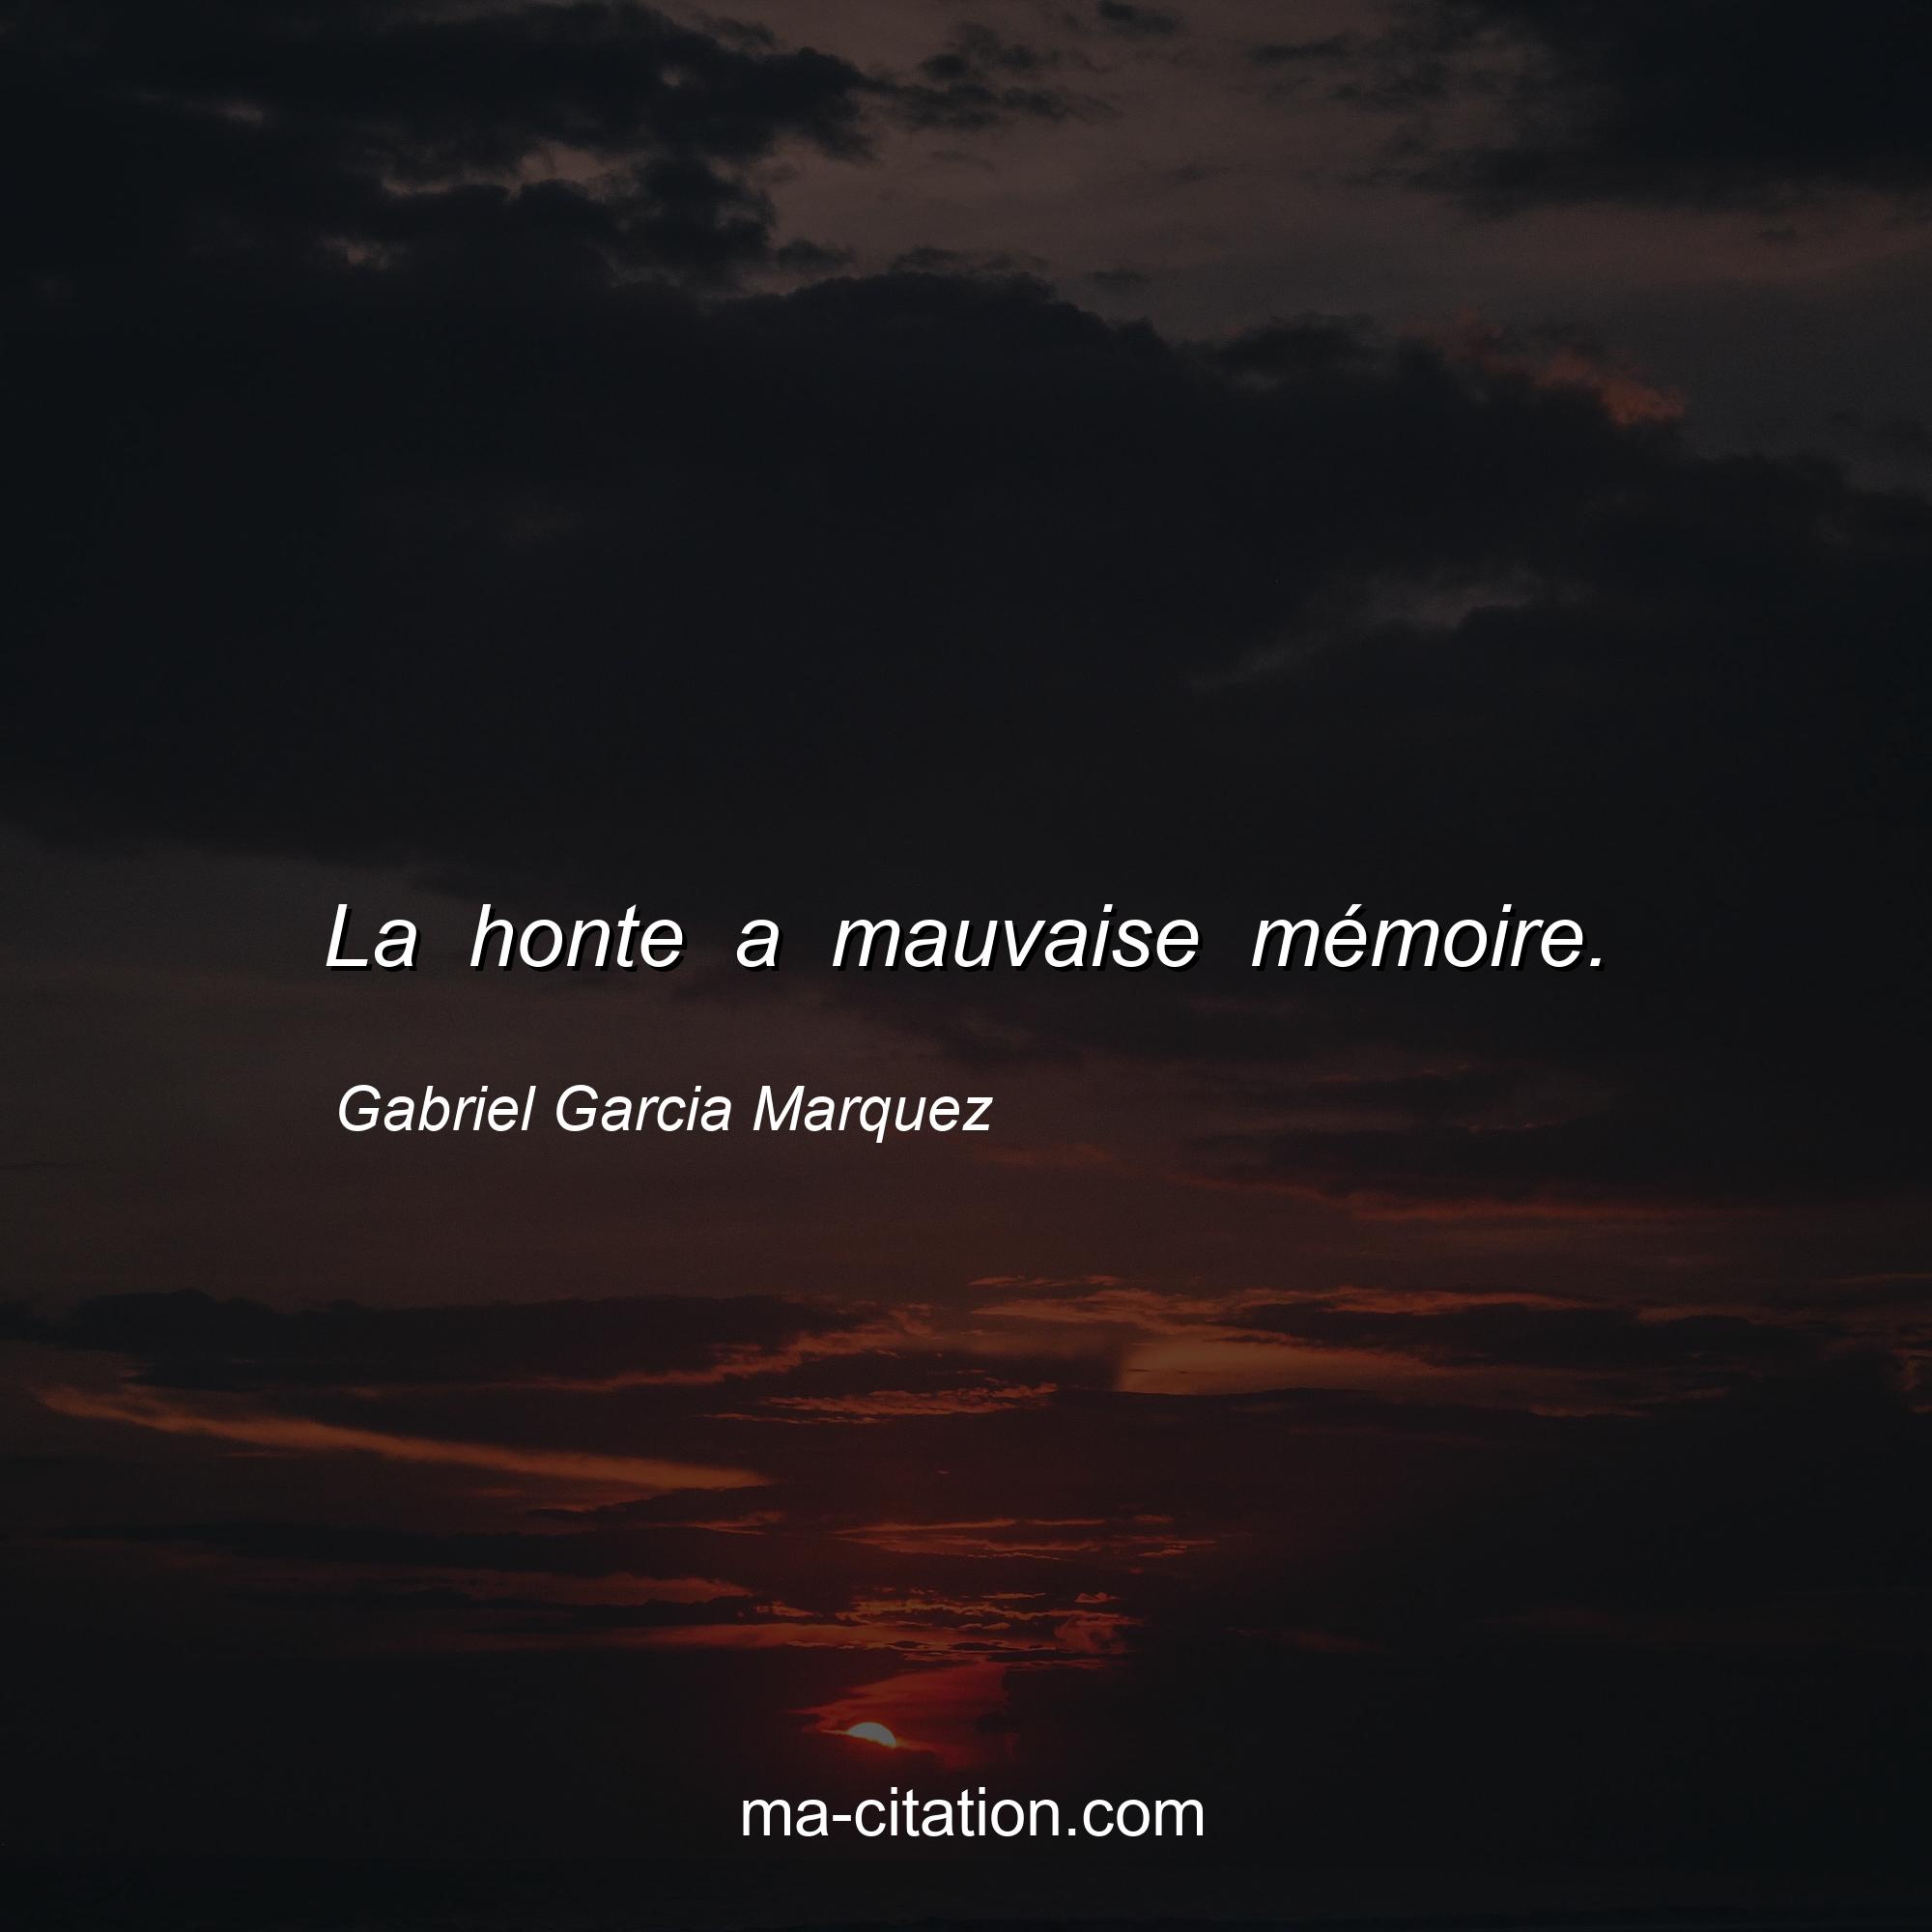 Gabriel Garcia Marquez : La honte a mauvaise mémoire.